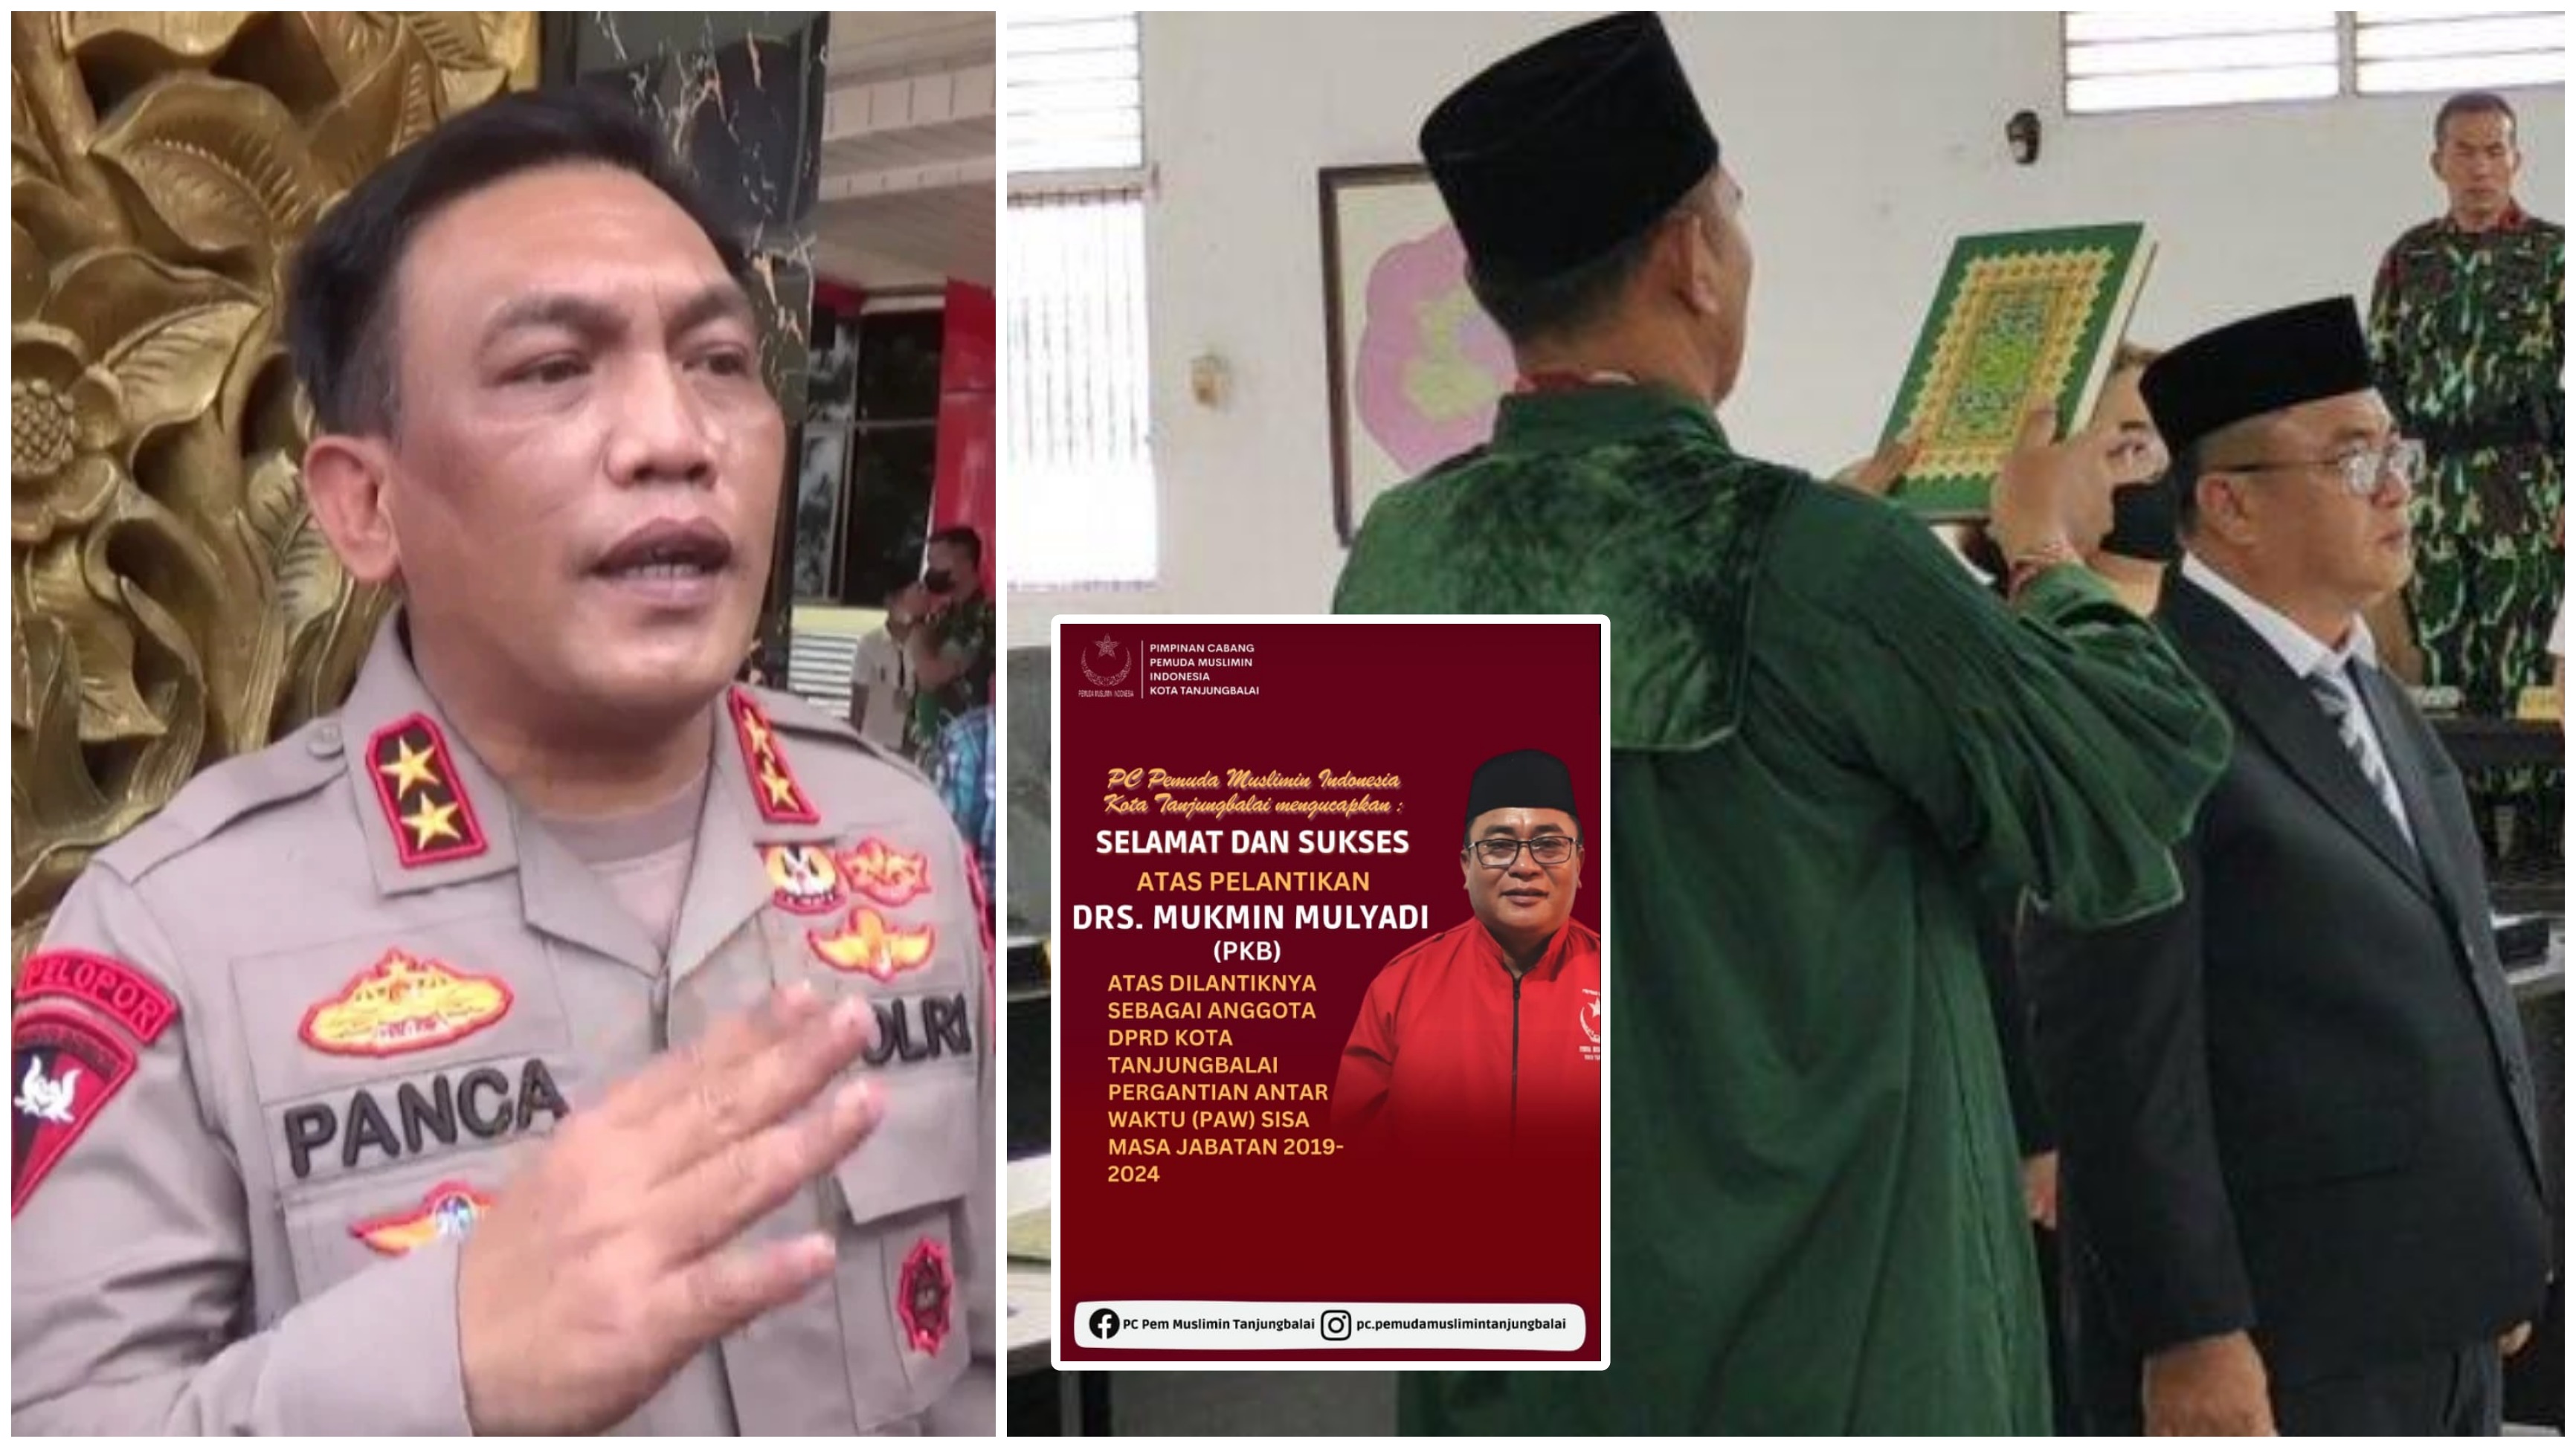 DPO Sejak Tahun 2020, Kapolda Sumut Minta Mukmin Mulyadi Menyerahkan Diri